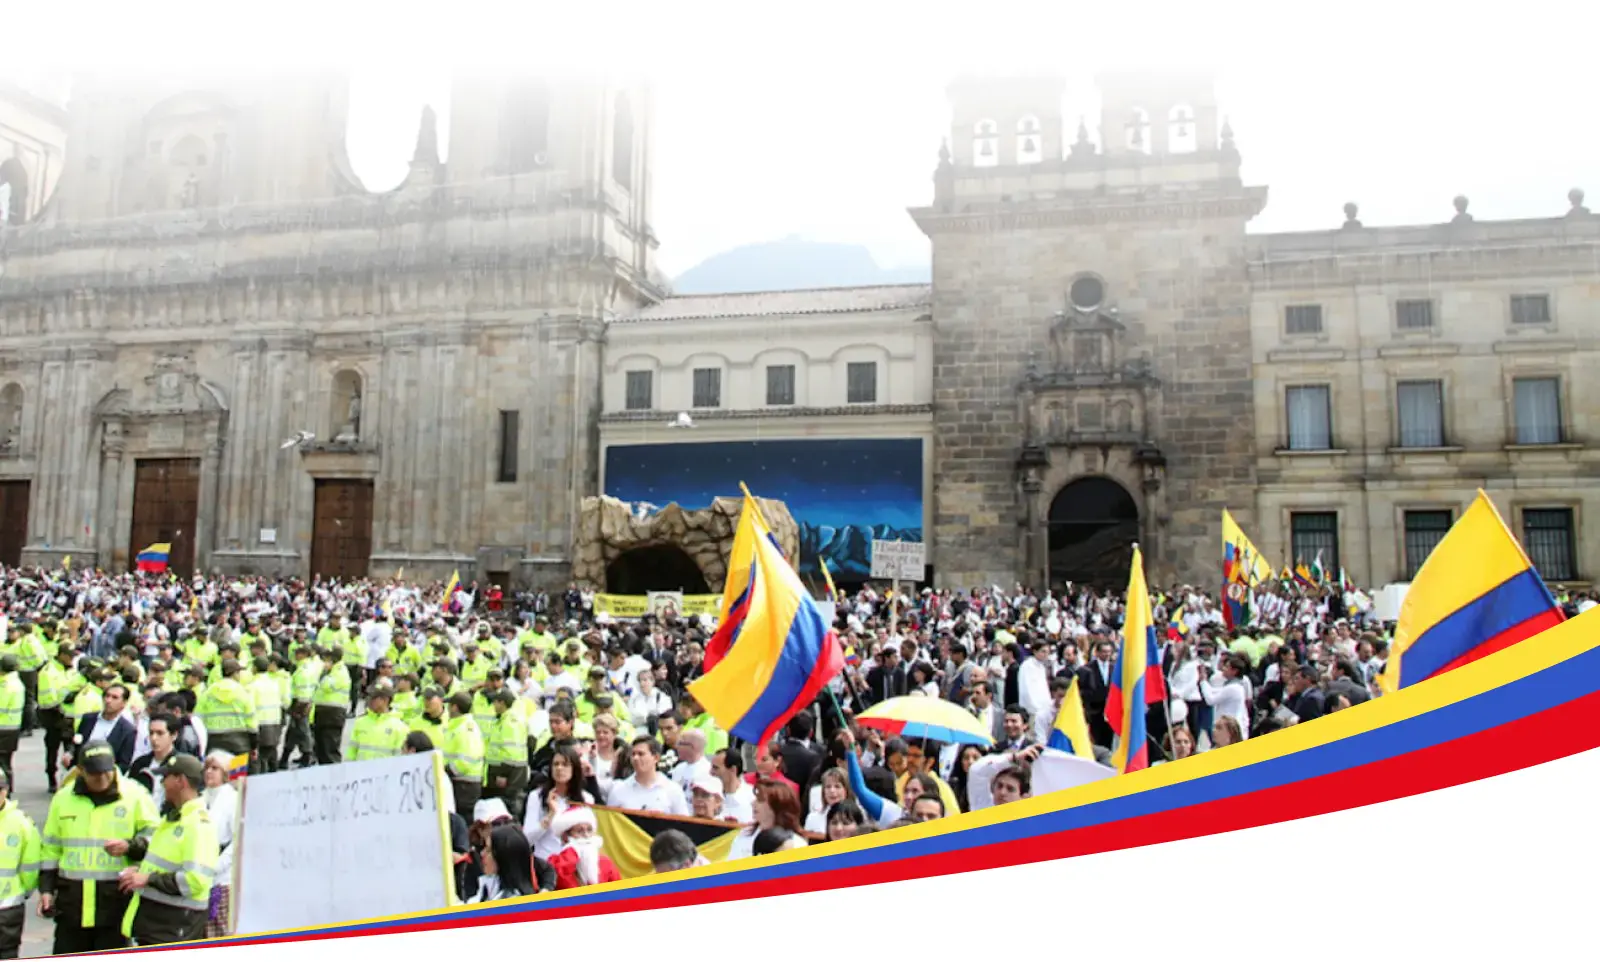 コロンビアに大勢の人々が集まり、その多くがコロンビアの国旗を掲げている。その多くはコロンビアの国旗を掲げている。おそらくは大聖堂か政府の建造物だろう。手前には法執行官がいる。